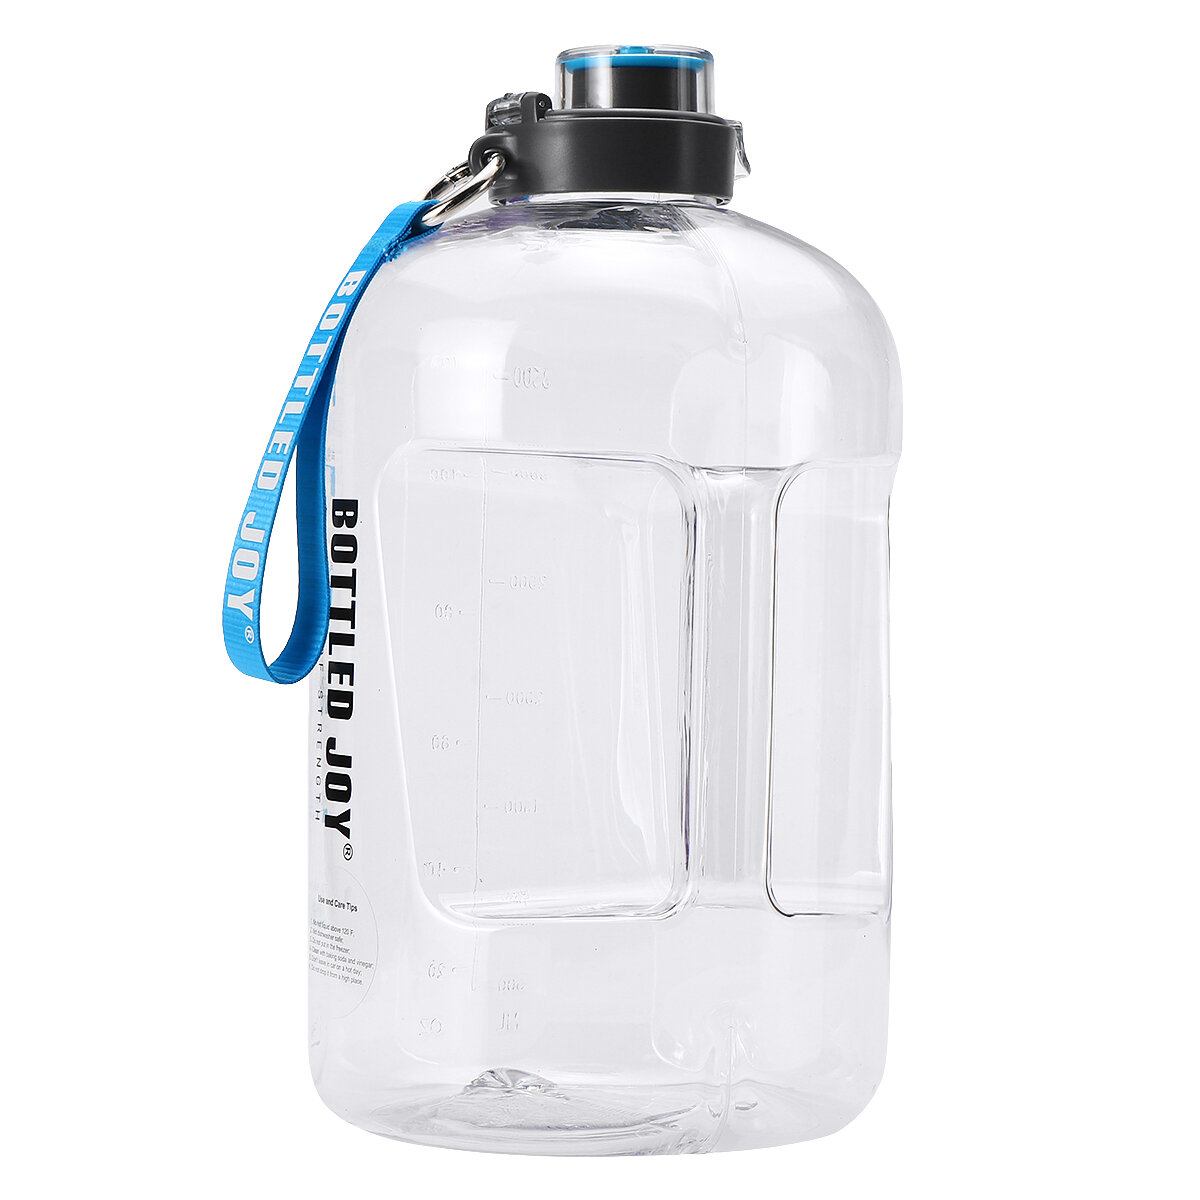 クリーニングブラシ、ジムトレーニングワークアウトキャップケトル付きの3.78L大容量スポーツ飲料水ボトル